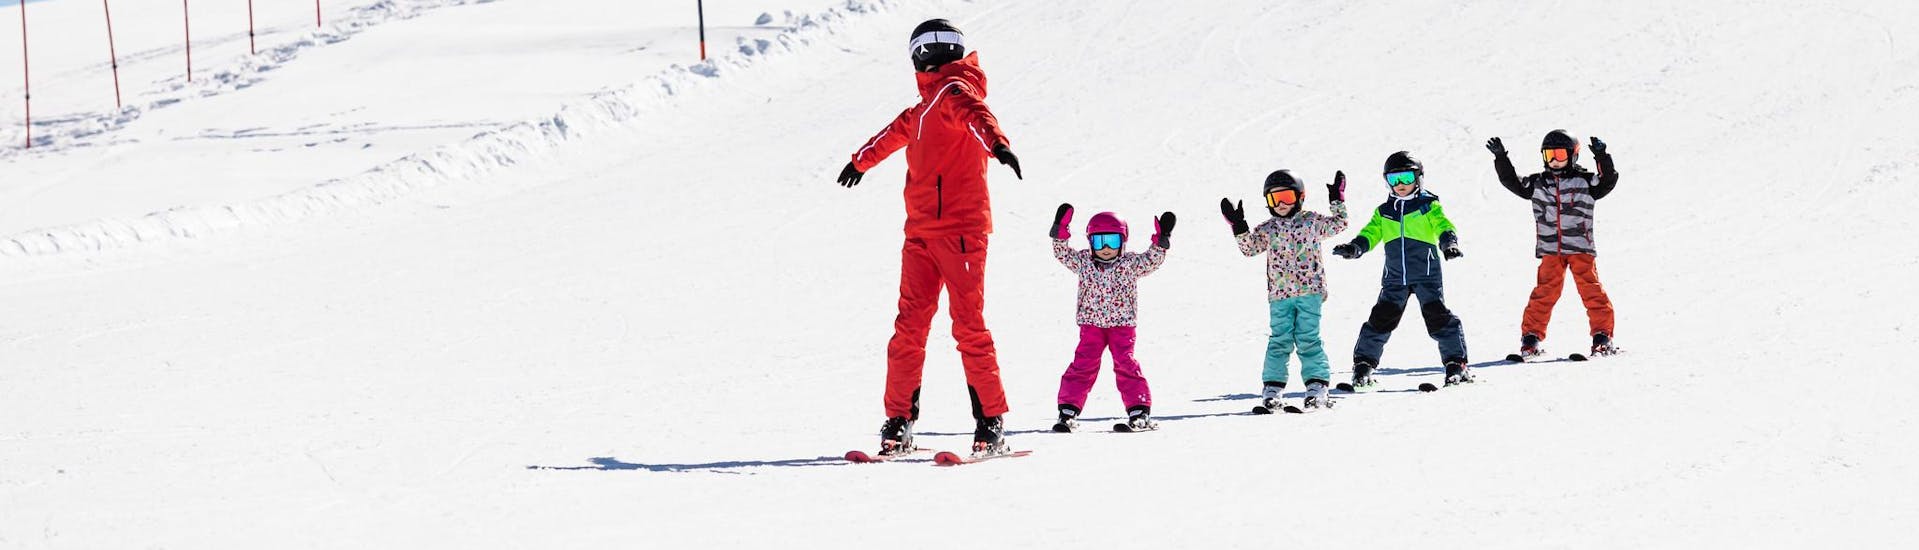 Moniteur de ski et enfants profitent d'une leçon de ski dans une école de ski près de Coburg.